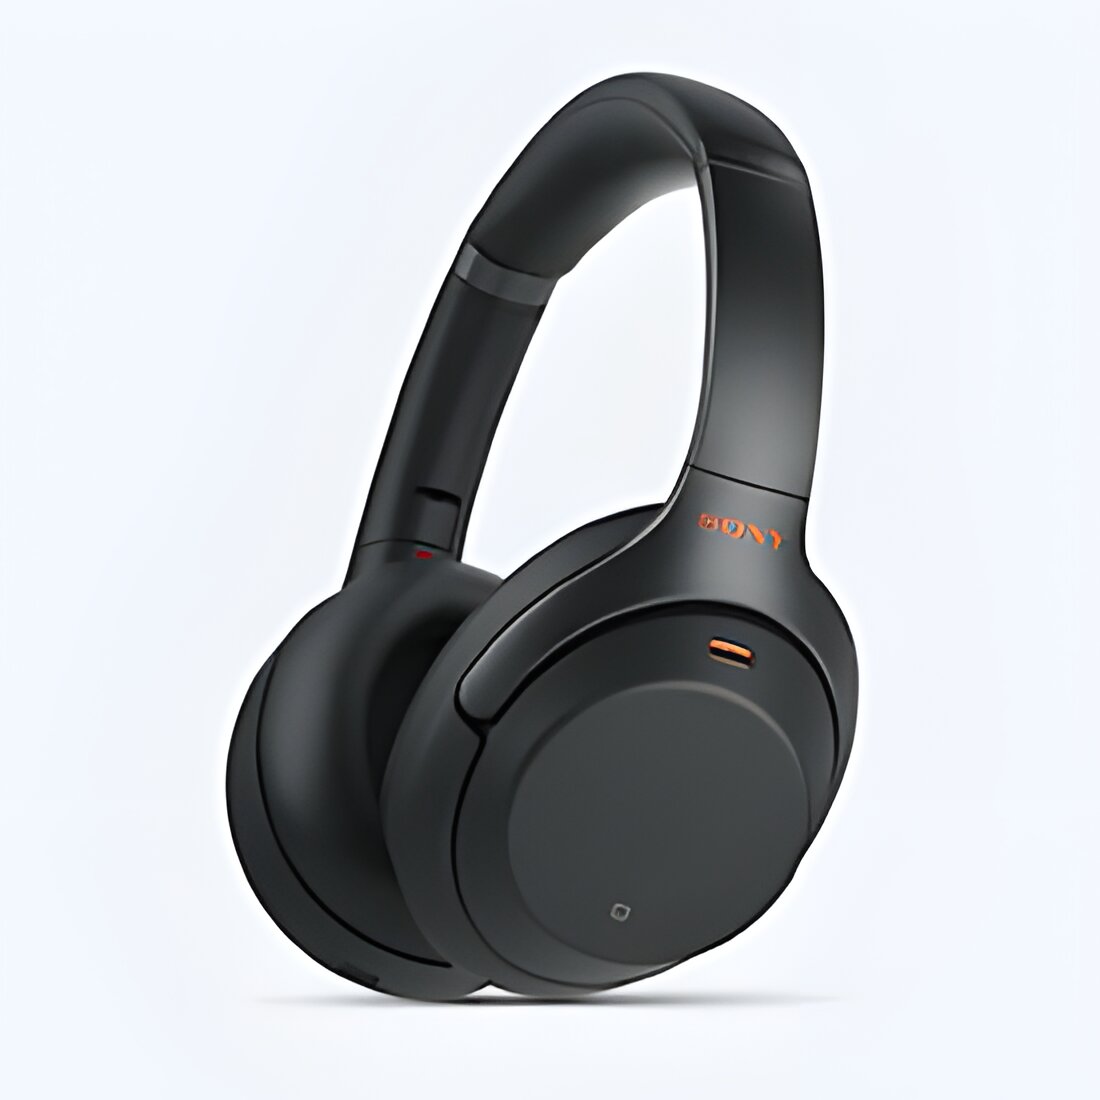 Free Sony Wh-1000xm3 Headphones